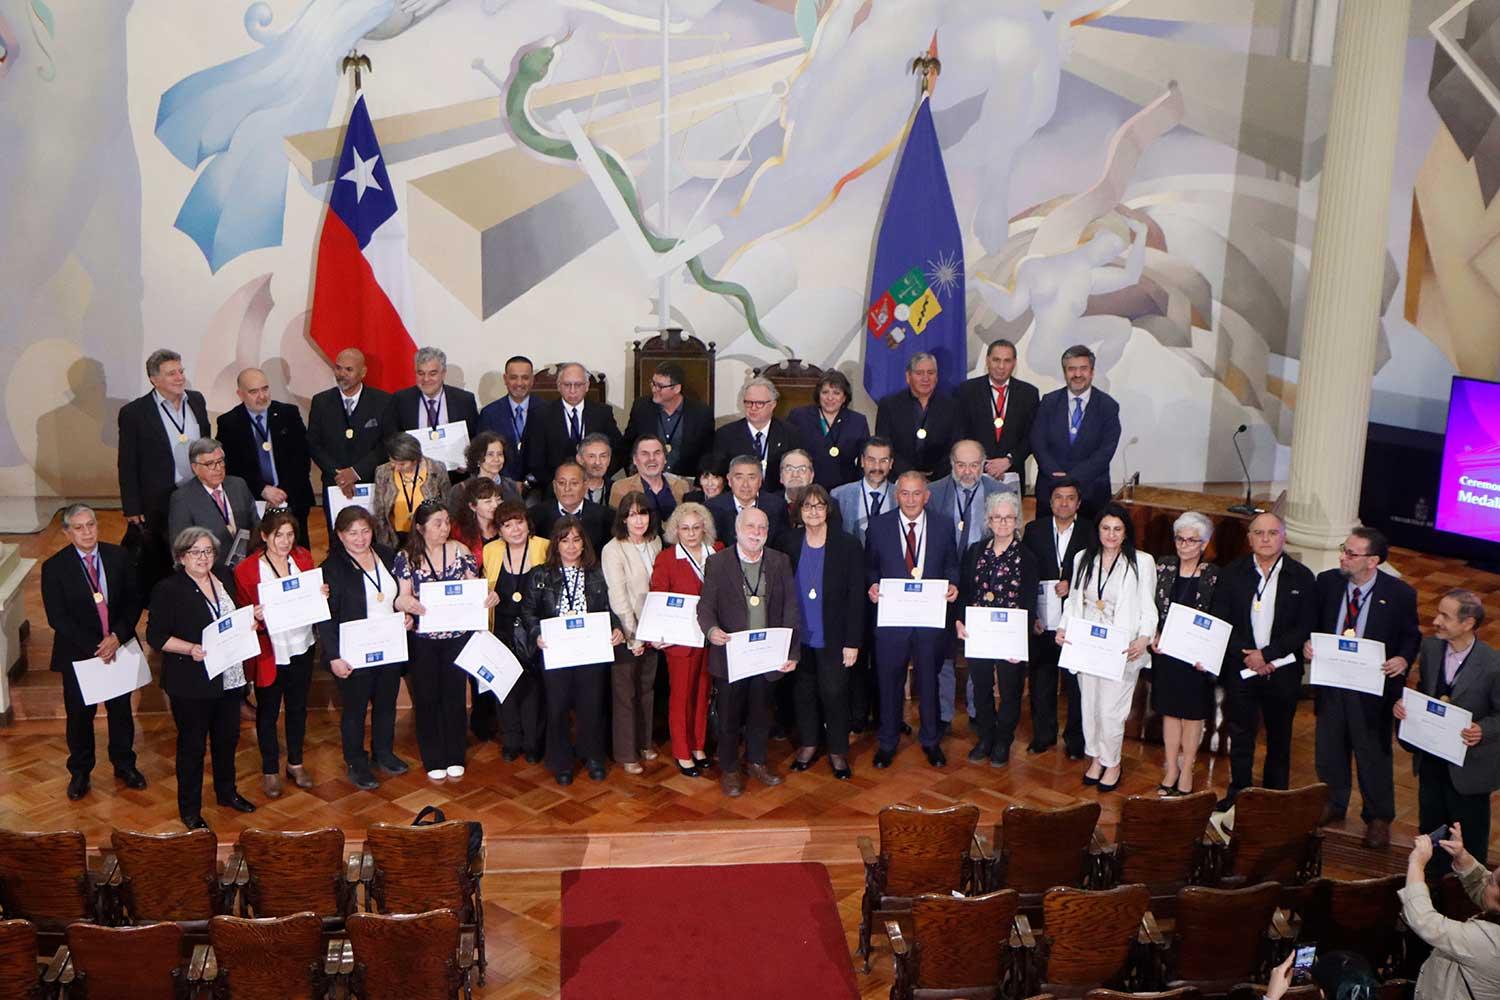 54 fueron las y los integrantes del plantel homenajeados en esta ceremonia que celebra el esfuerzo, compromiso y dedicación de quienes cumplieron 40 años en la Universidad de Chile.